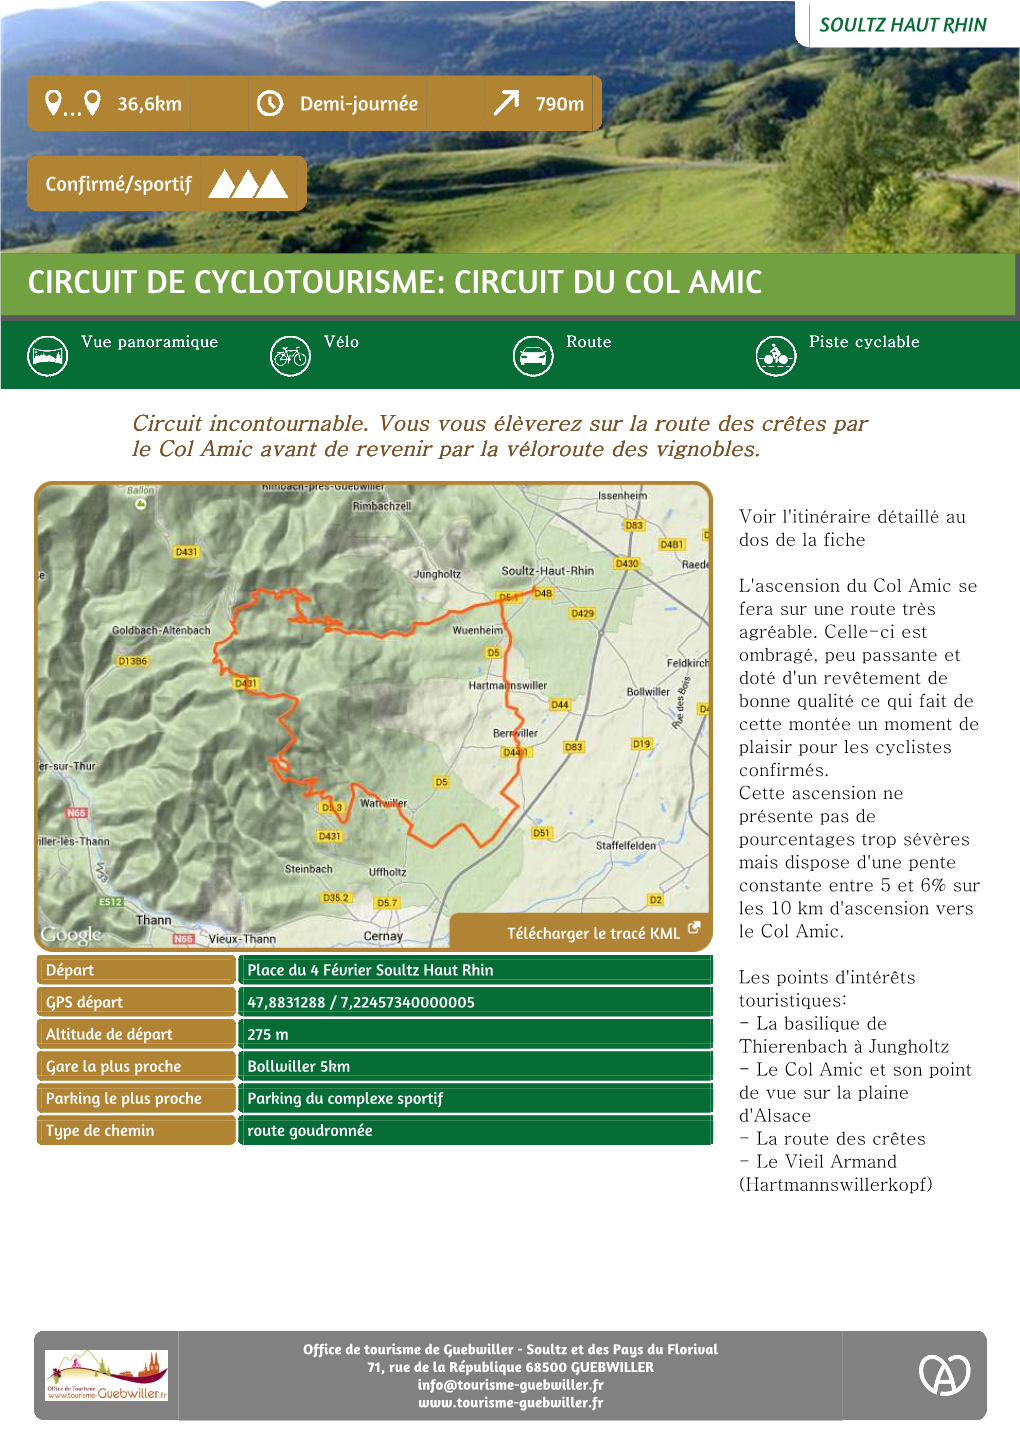 Circuit De Cyclotourisme: Circuit Du Col Amic